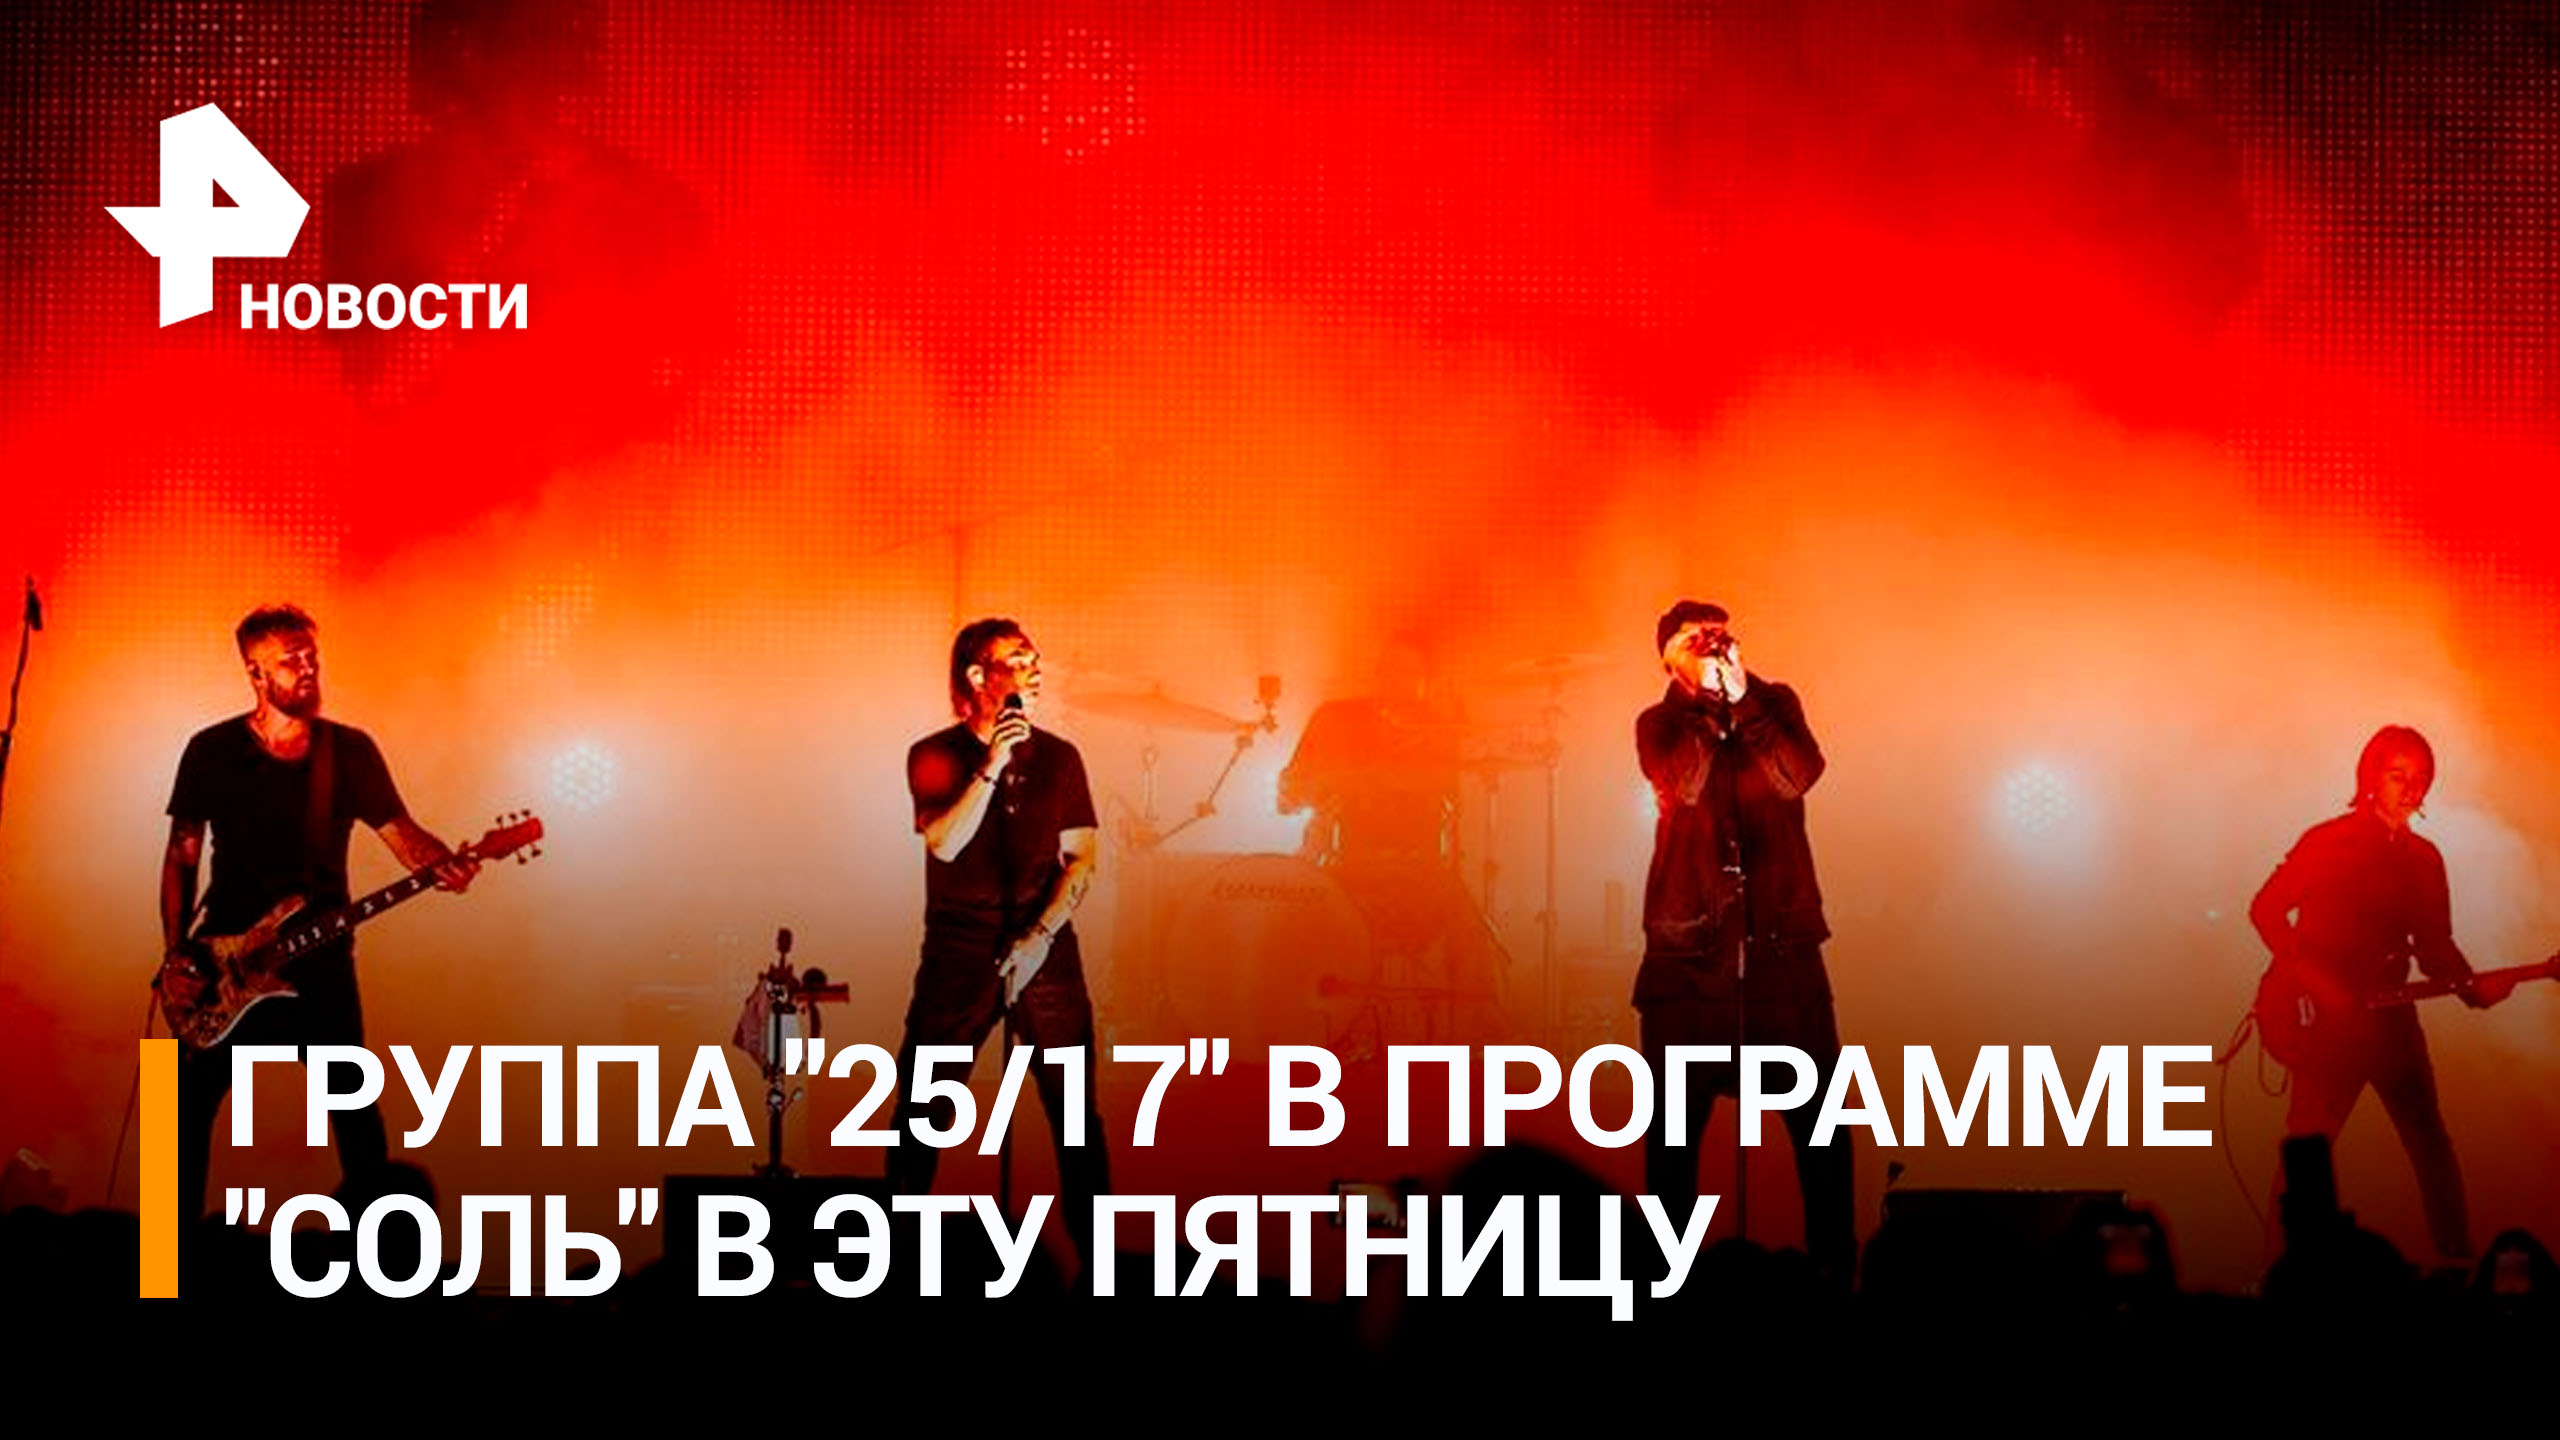 Группа "25/17" станет гостем музыкальной программы "Соль" / РЕН Новости